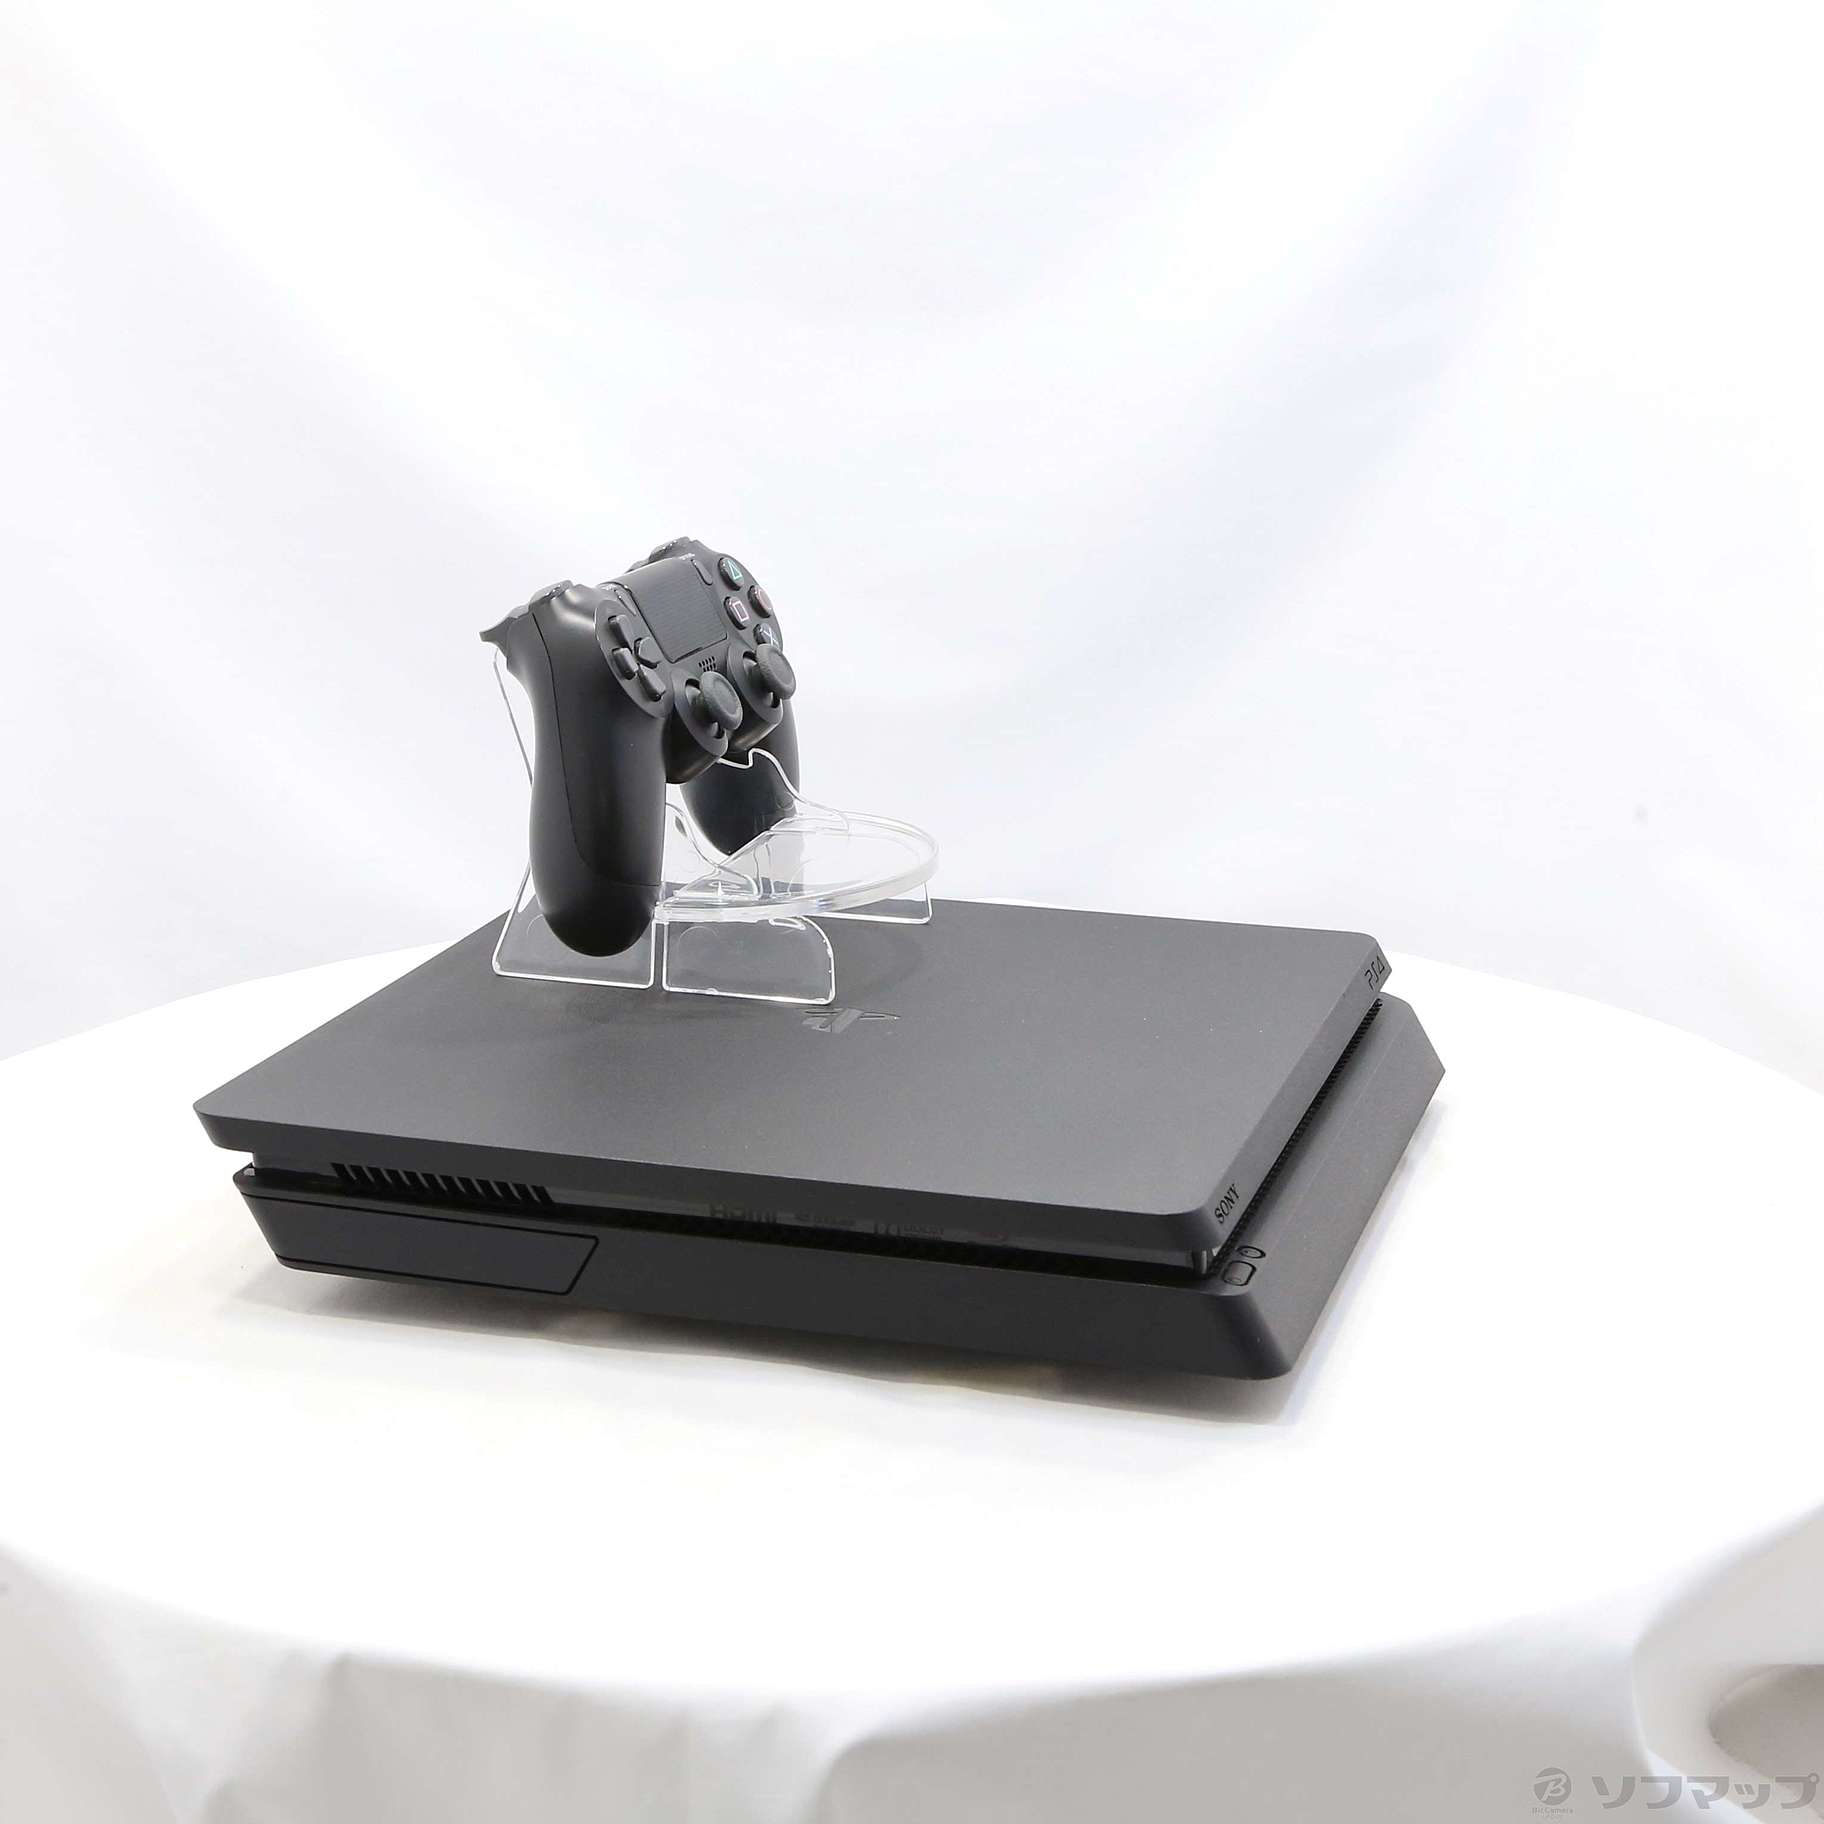 〔中古品〕 PlayStation 4 ジェット・ブラック 500GB CUH-2200AB01_3